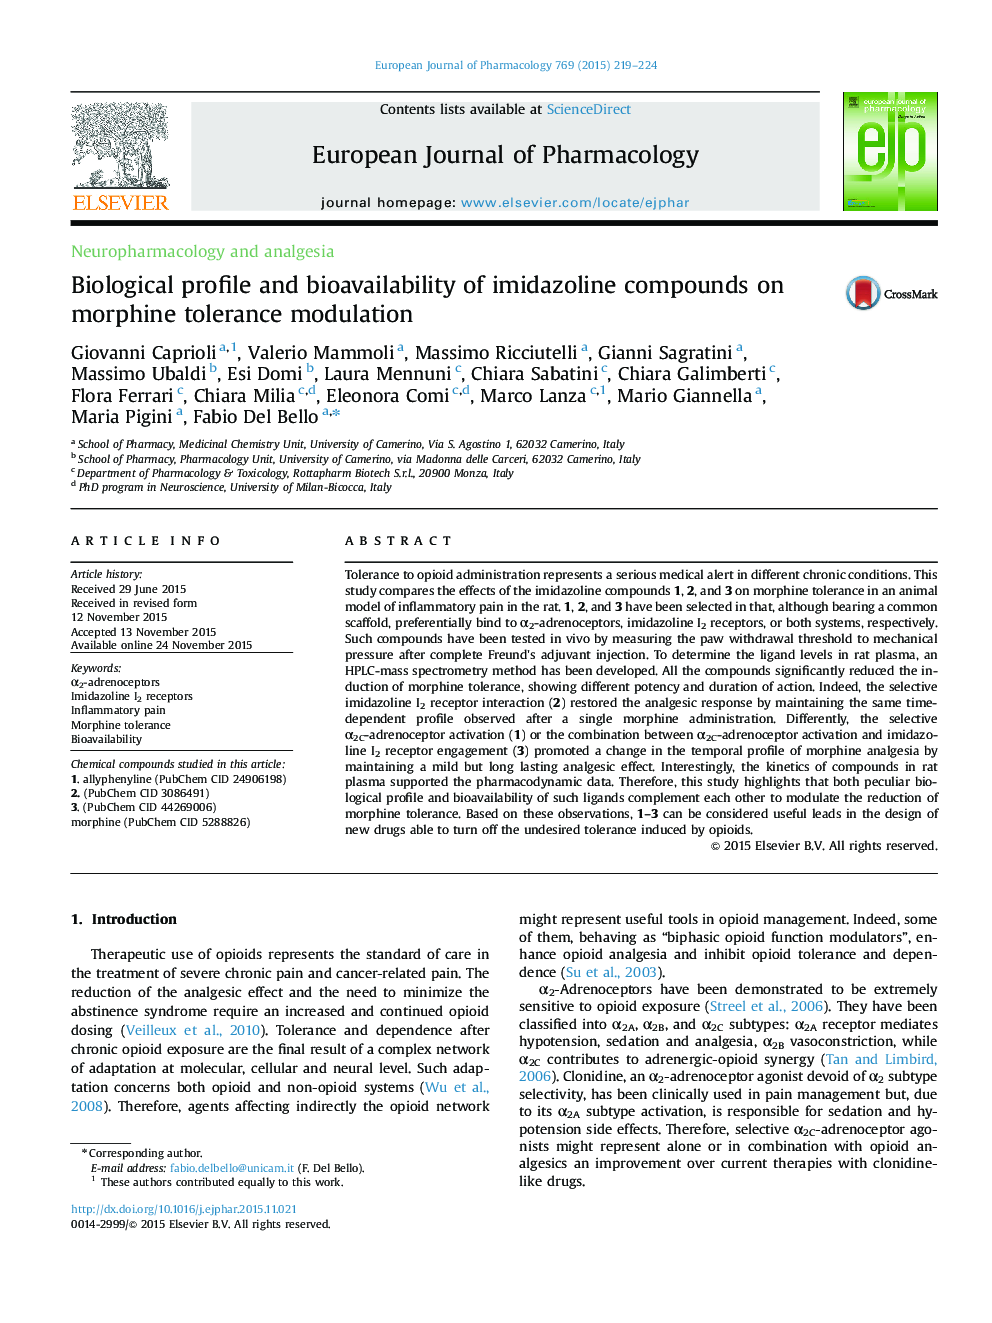 مشخصات بیولوژیکی و قابلیت زیست پذیری ترکیبات ایزایاآزولین در مدولاسیون تحمل به مورفین 